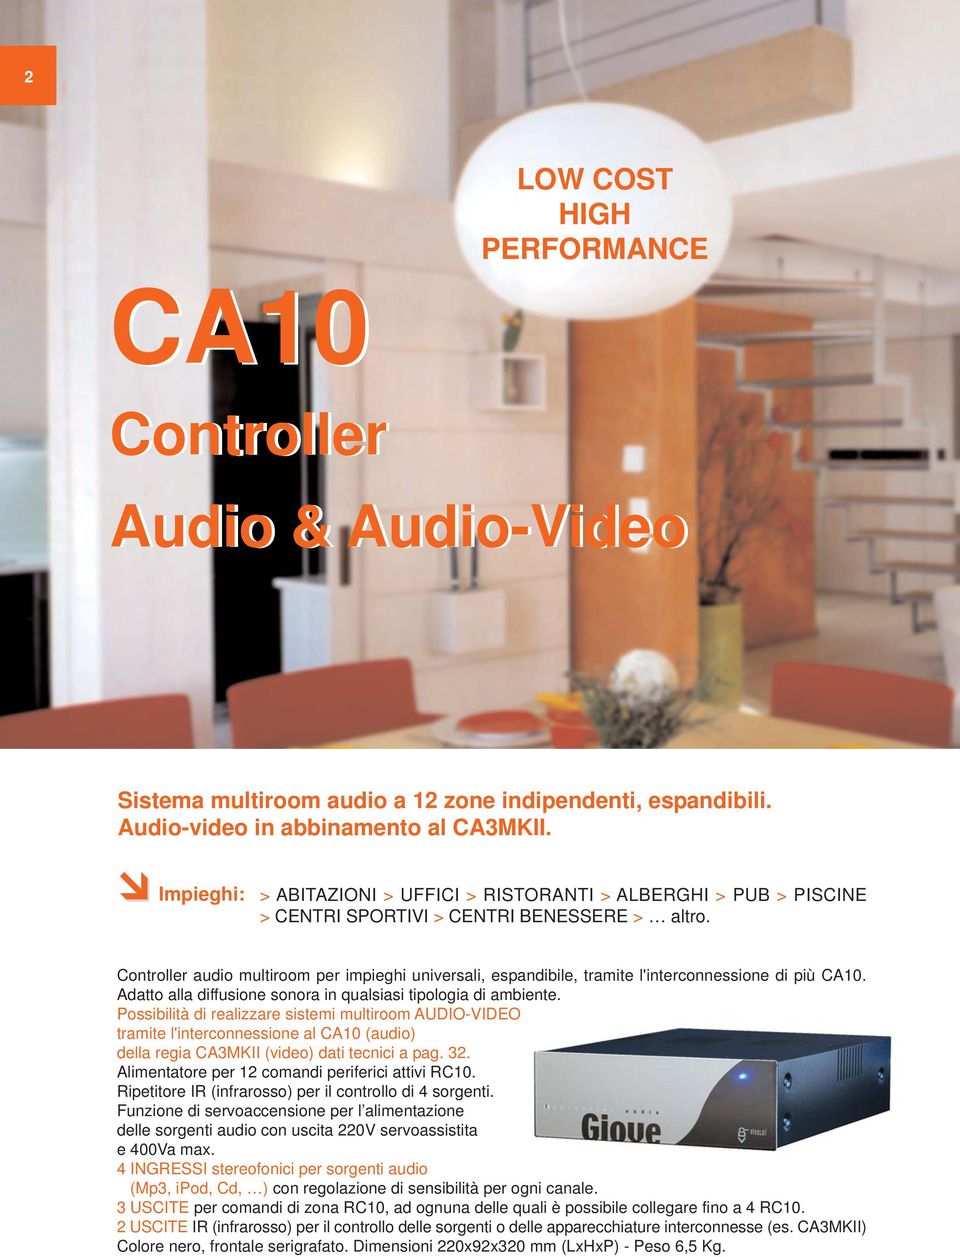 Controller audio multiroom per impieghi universali, espandibile, tramite l'interconnessione di più CA10. Adatto alla diffusione sonora in qualsiasi tipologia di ambiente.